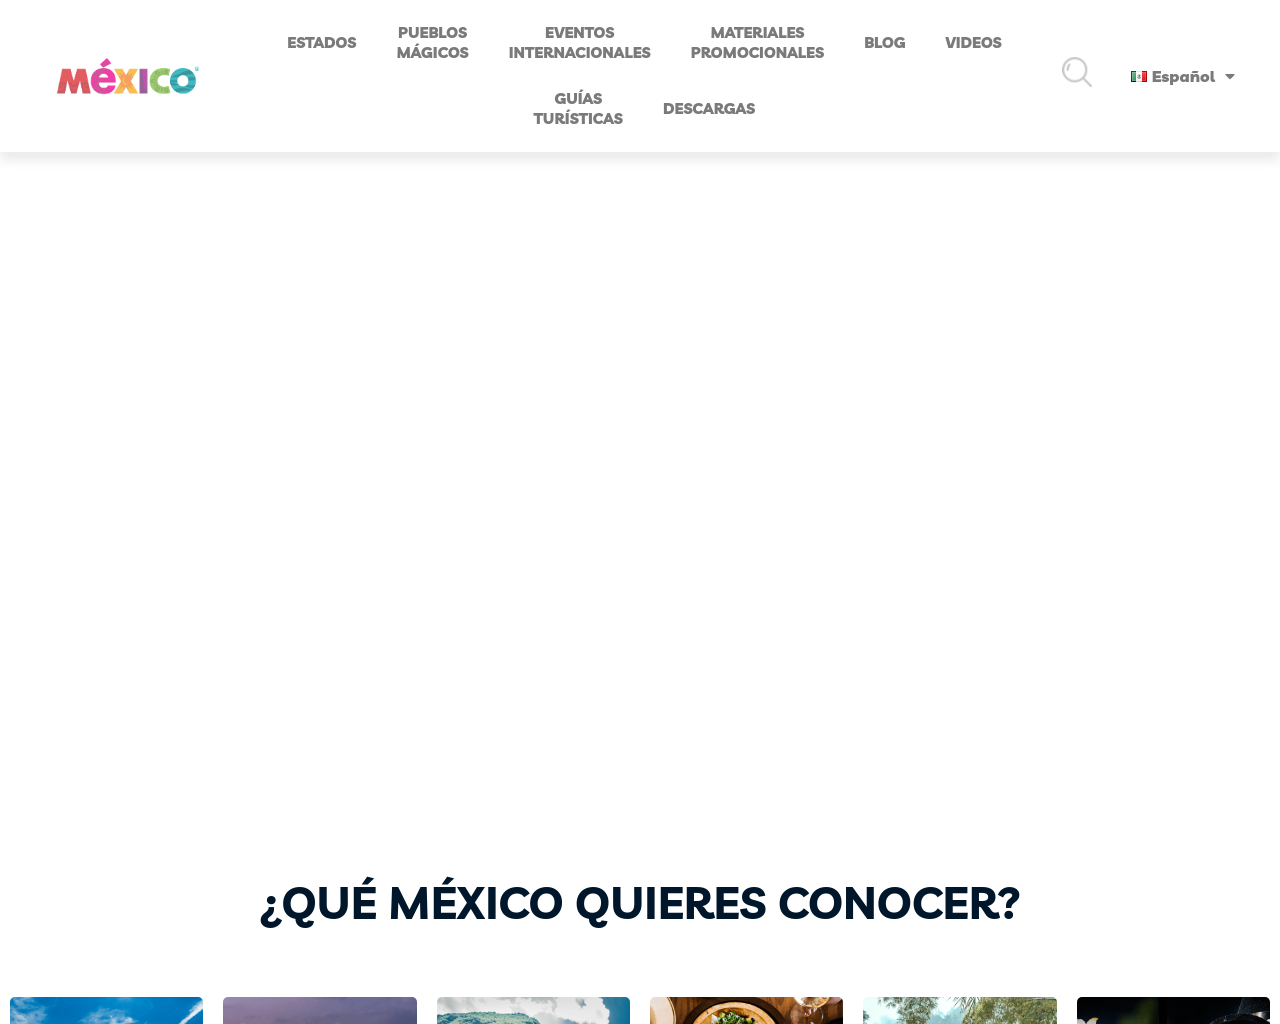 visitmexico.com